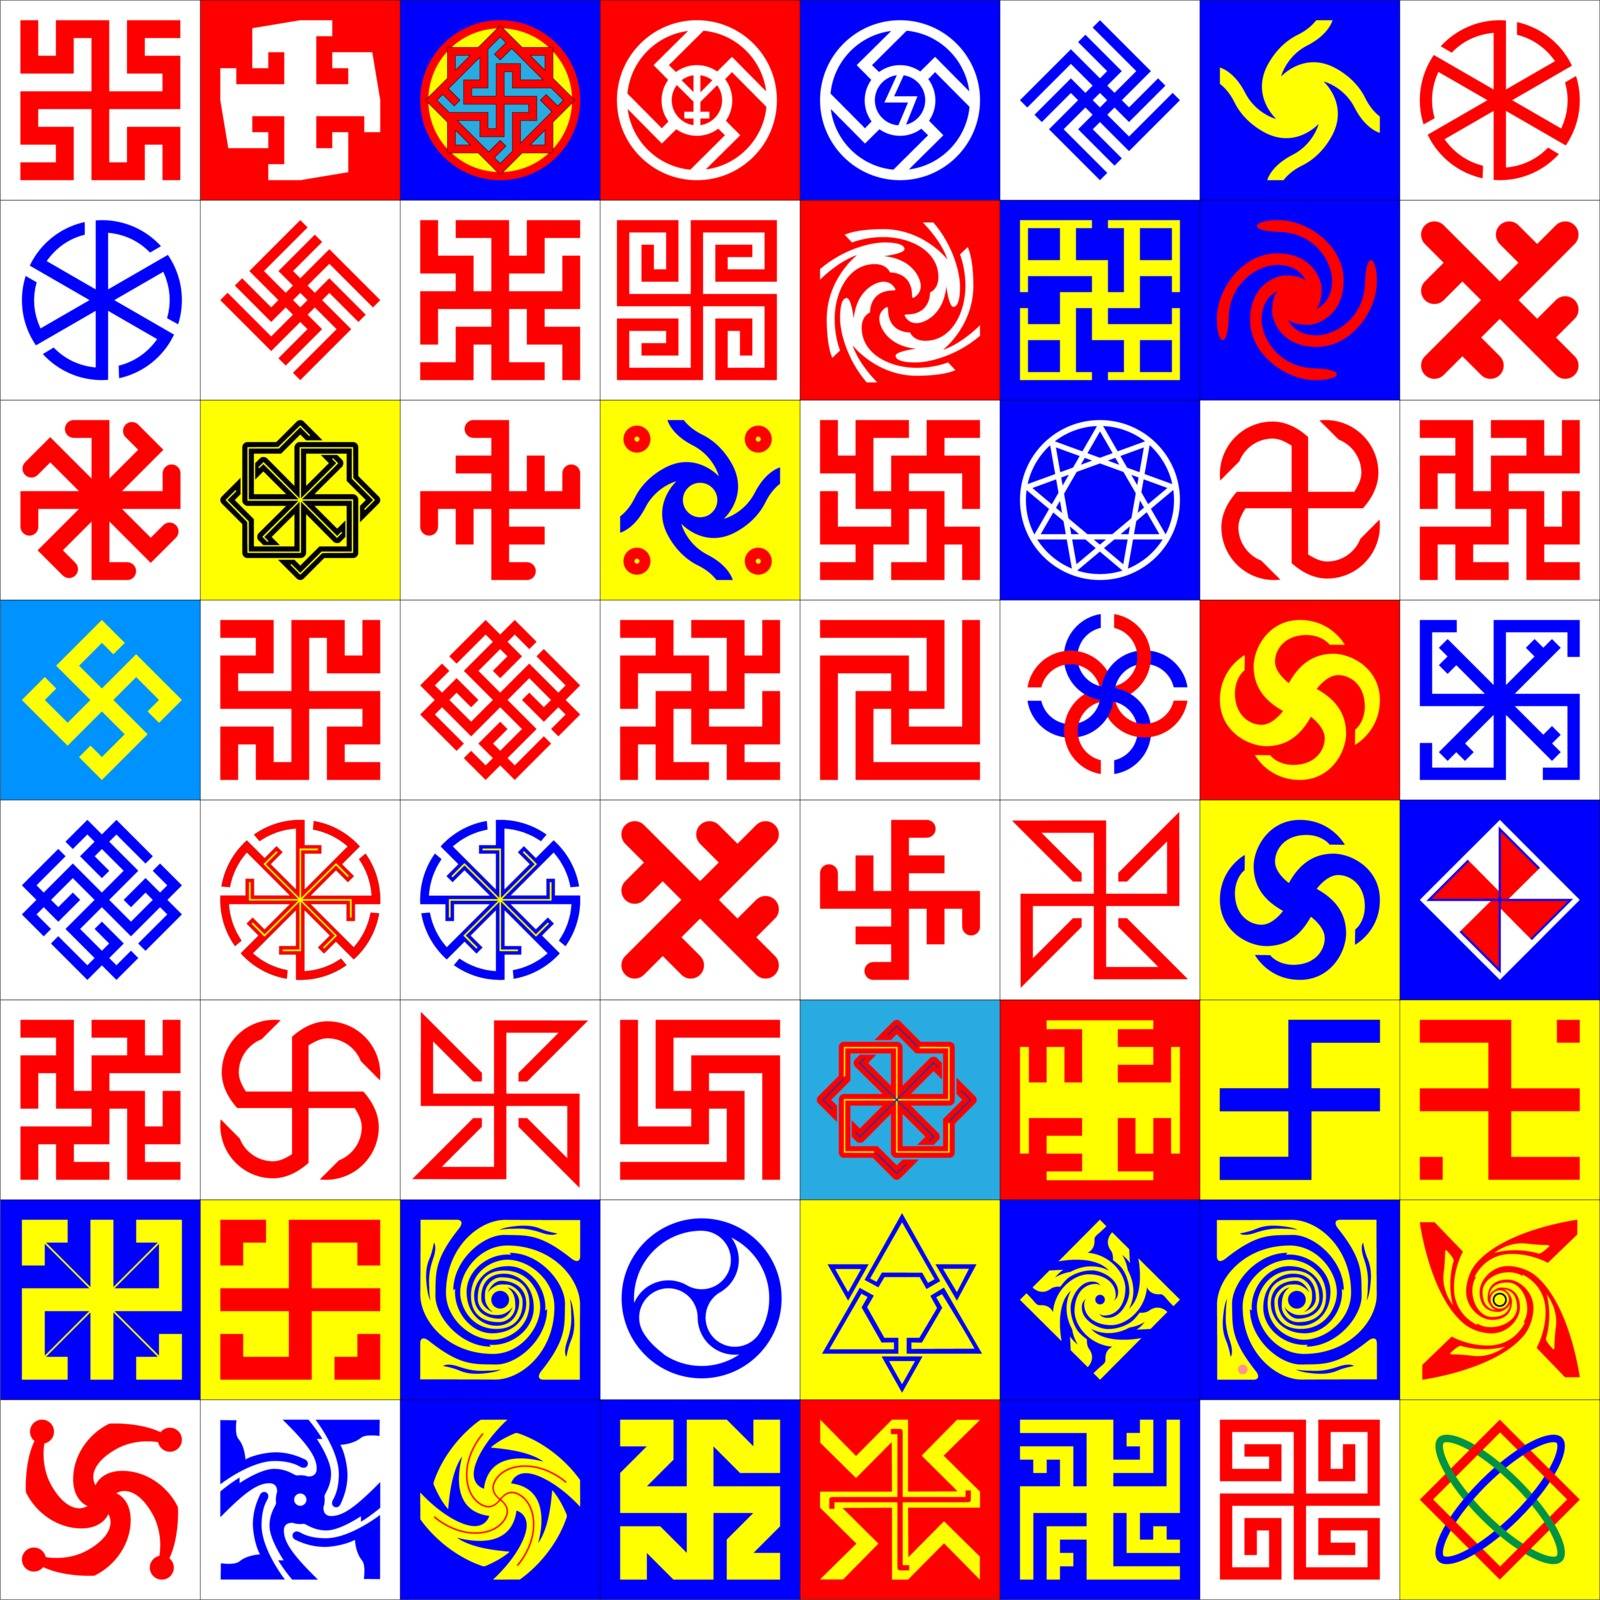 Runes. Occult Symbols by Valkos